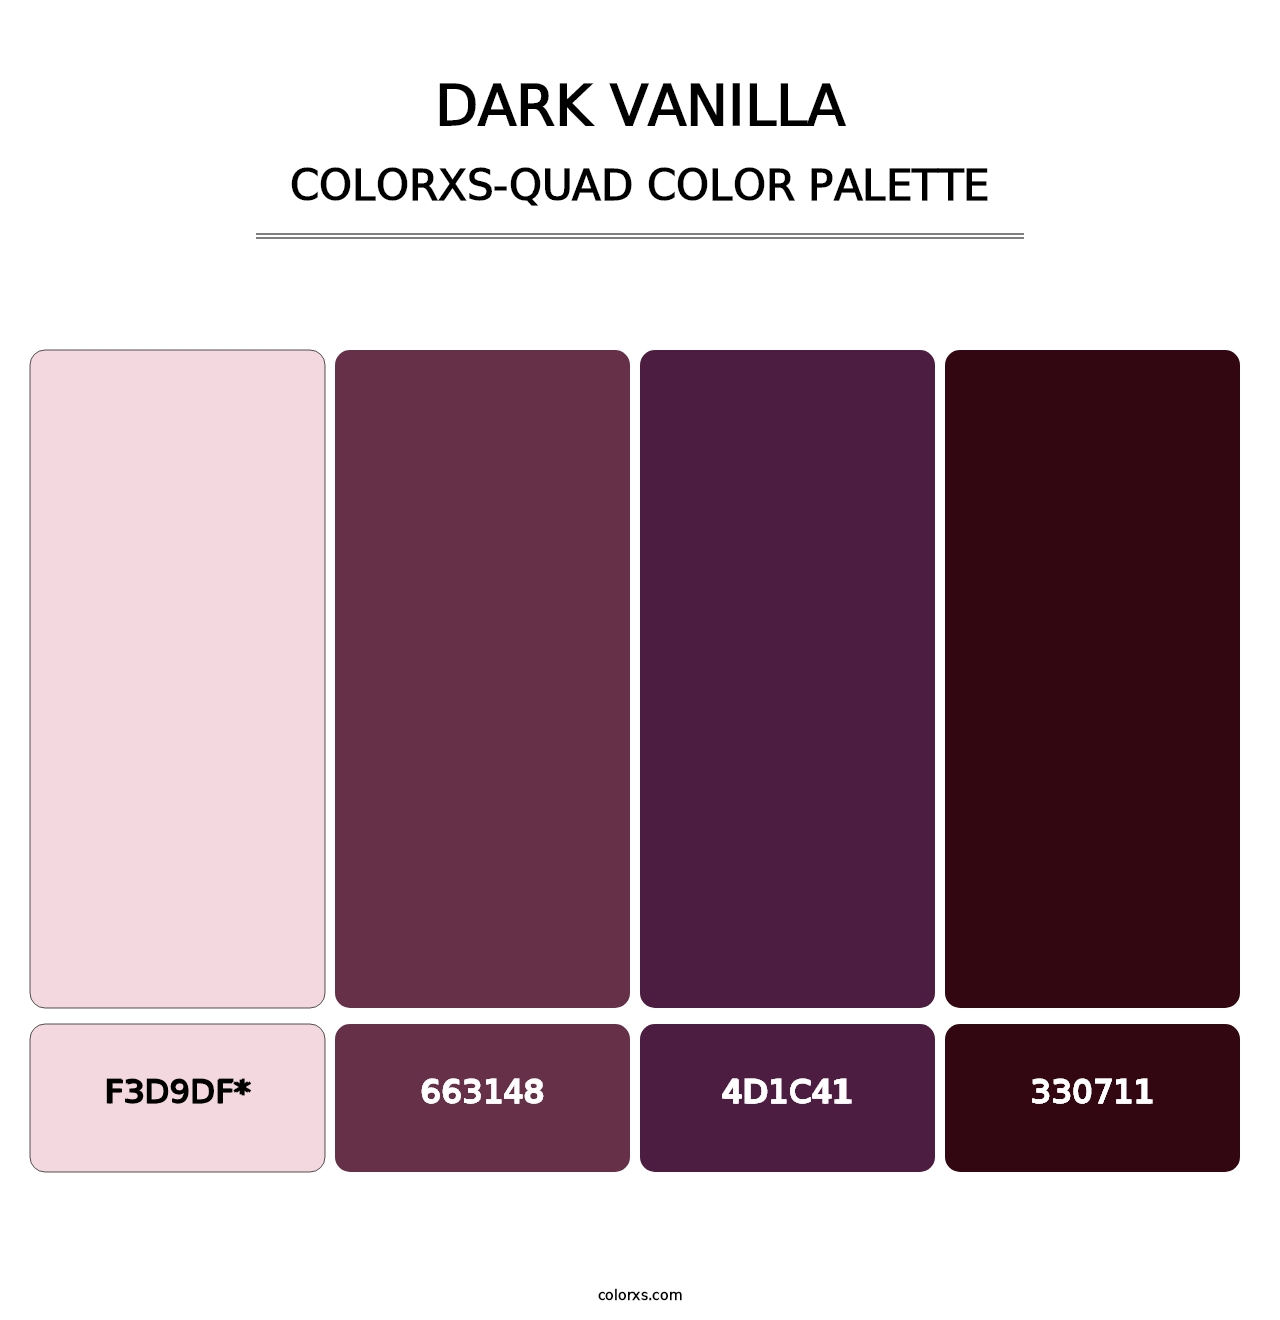 Dark Vanilla - Colorxs Quad Palette